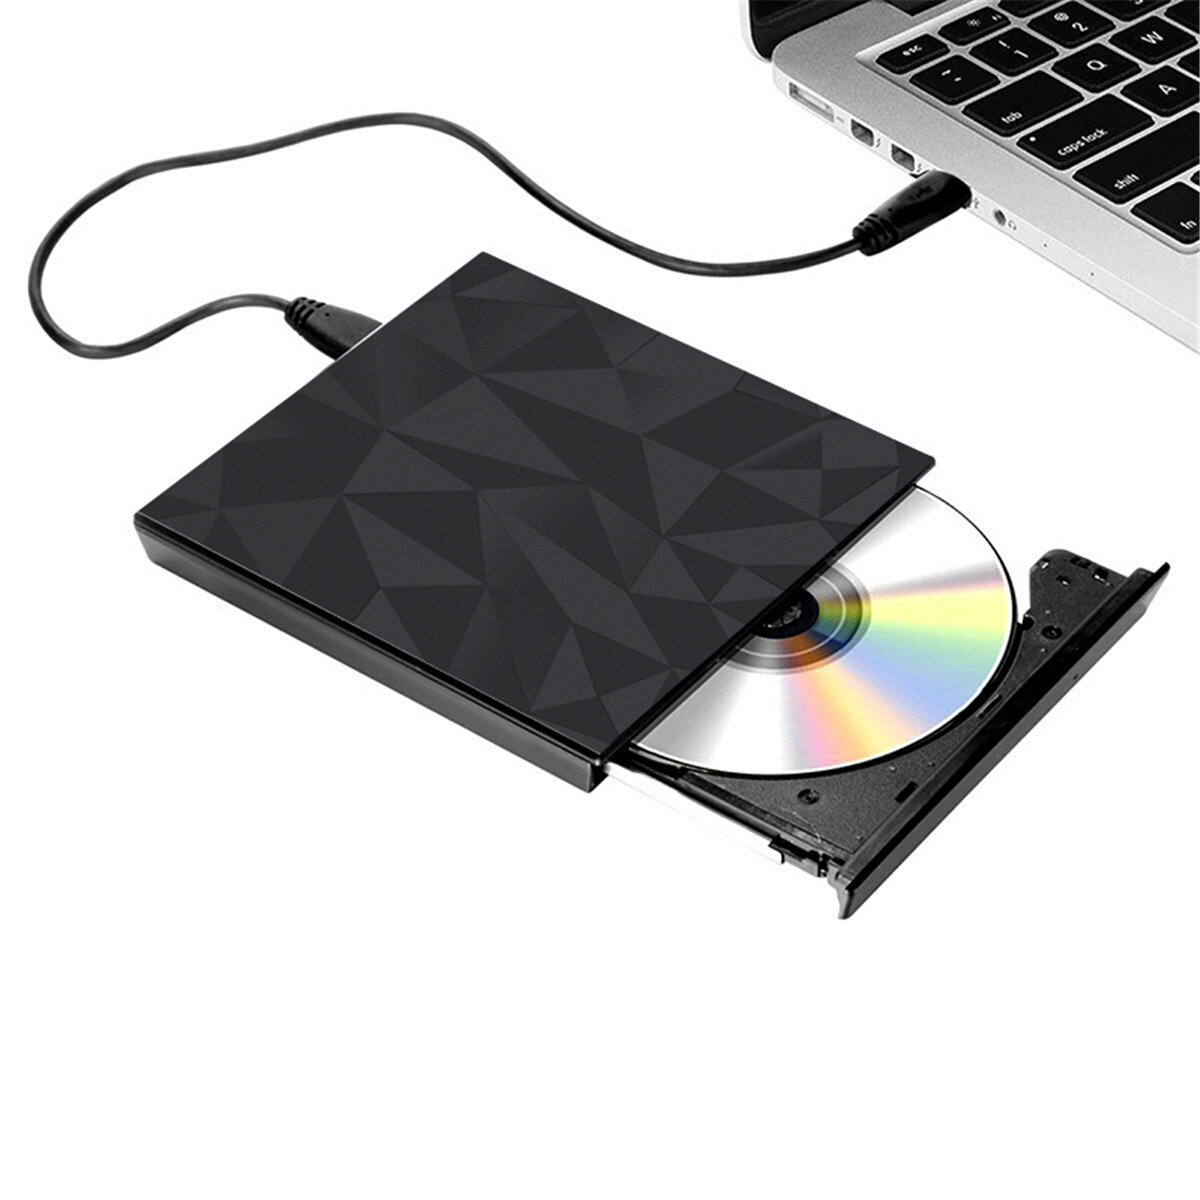 Bandeja negra USB 3.0 portátil Tipo DVD-RW externo Max.24X Transmisión de datos de alta velocidad para Win XP Win 7 Win